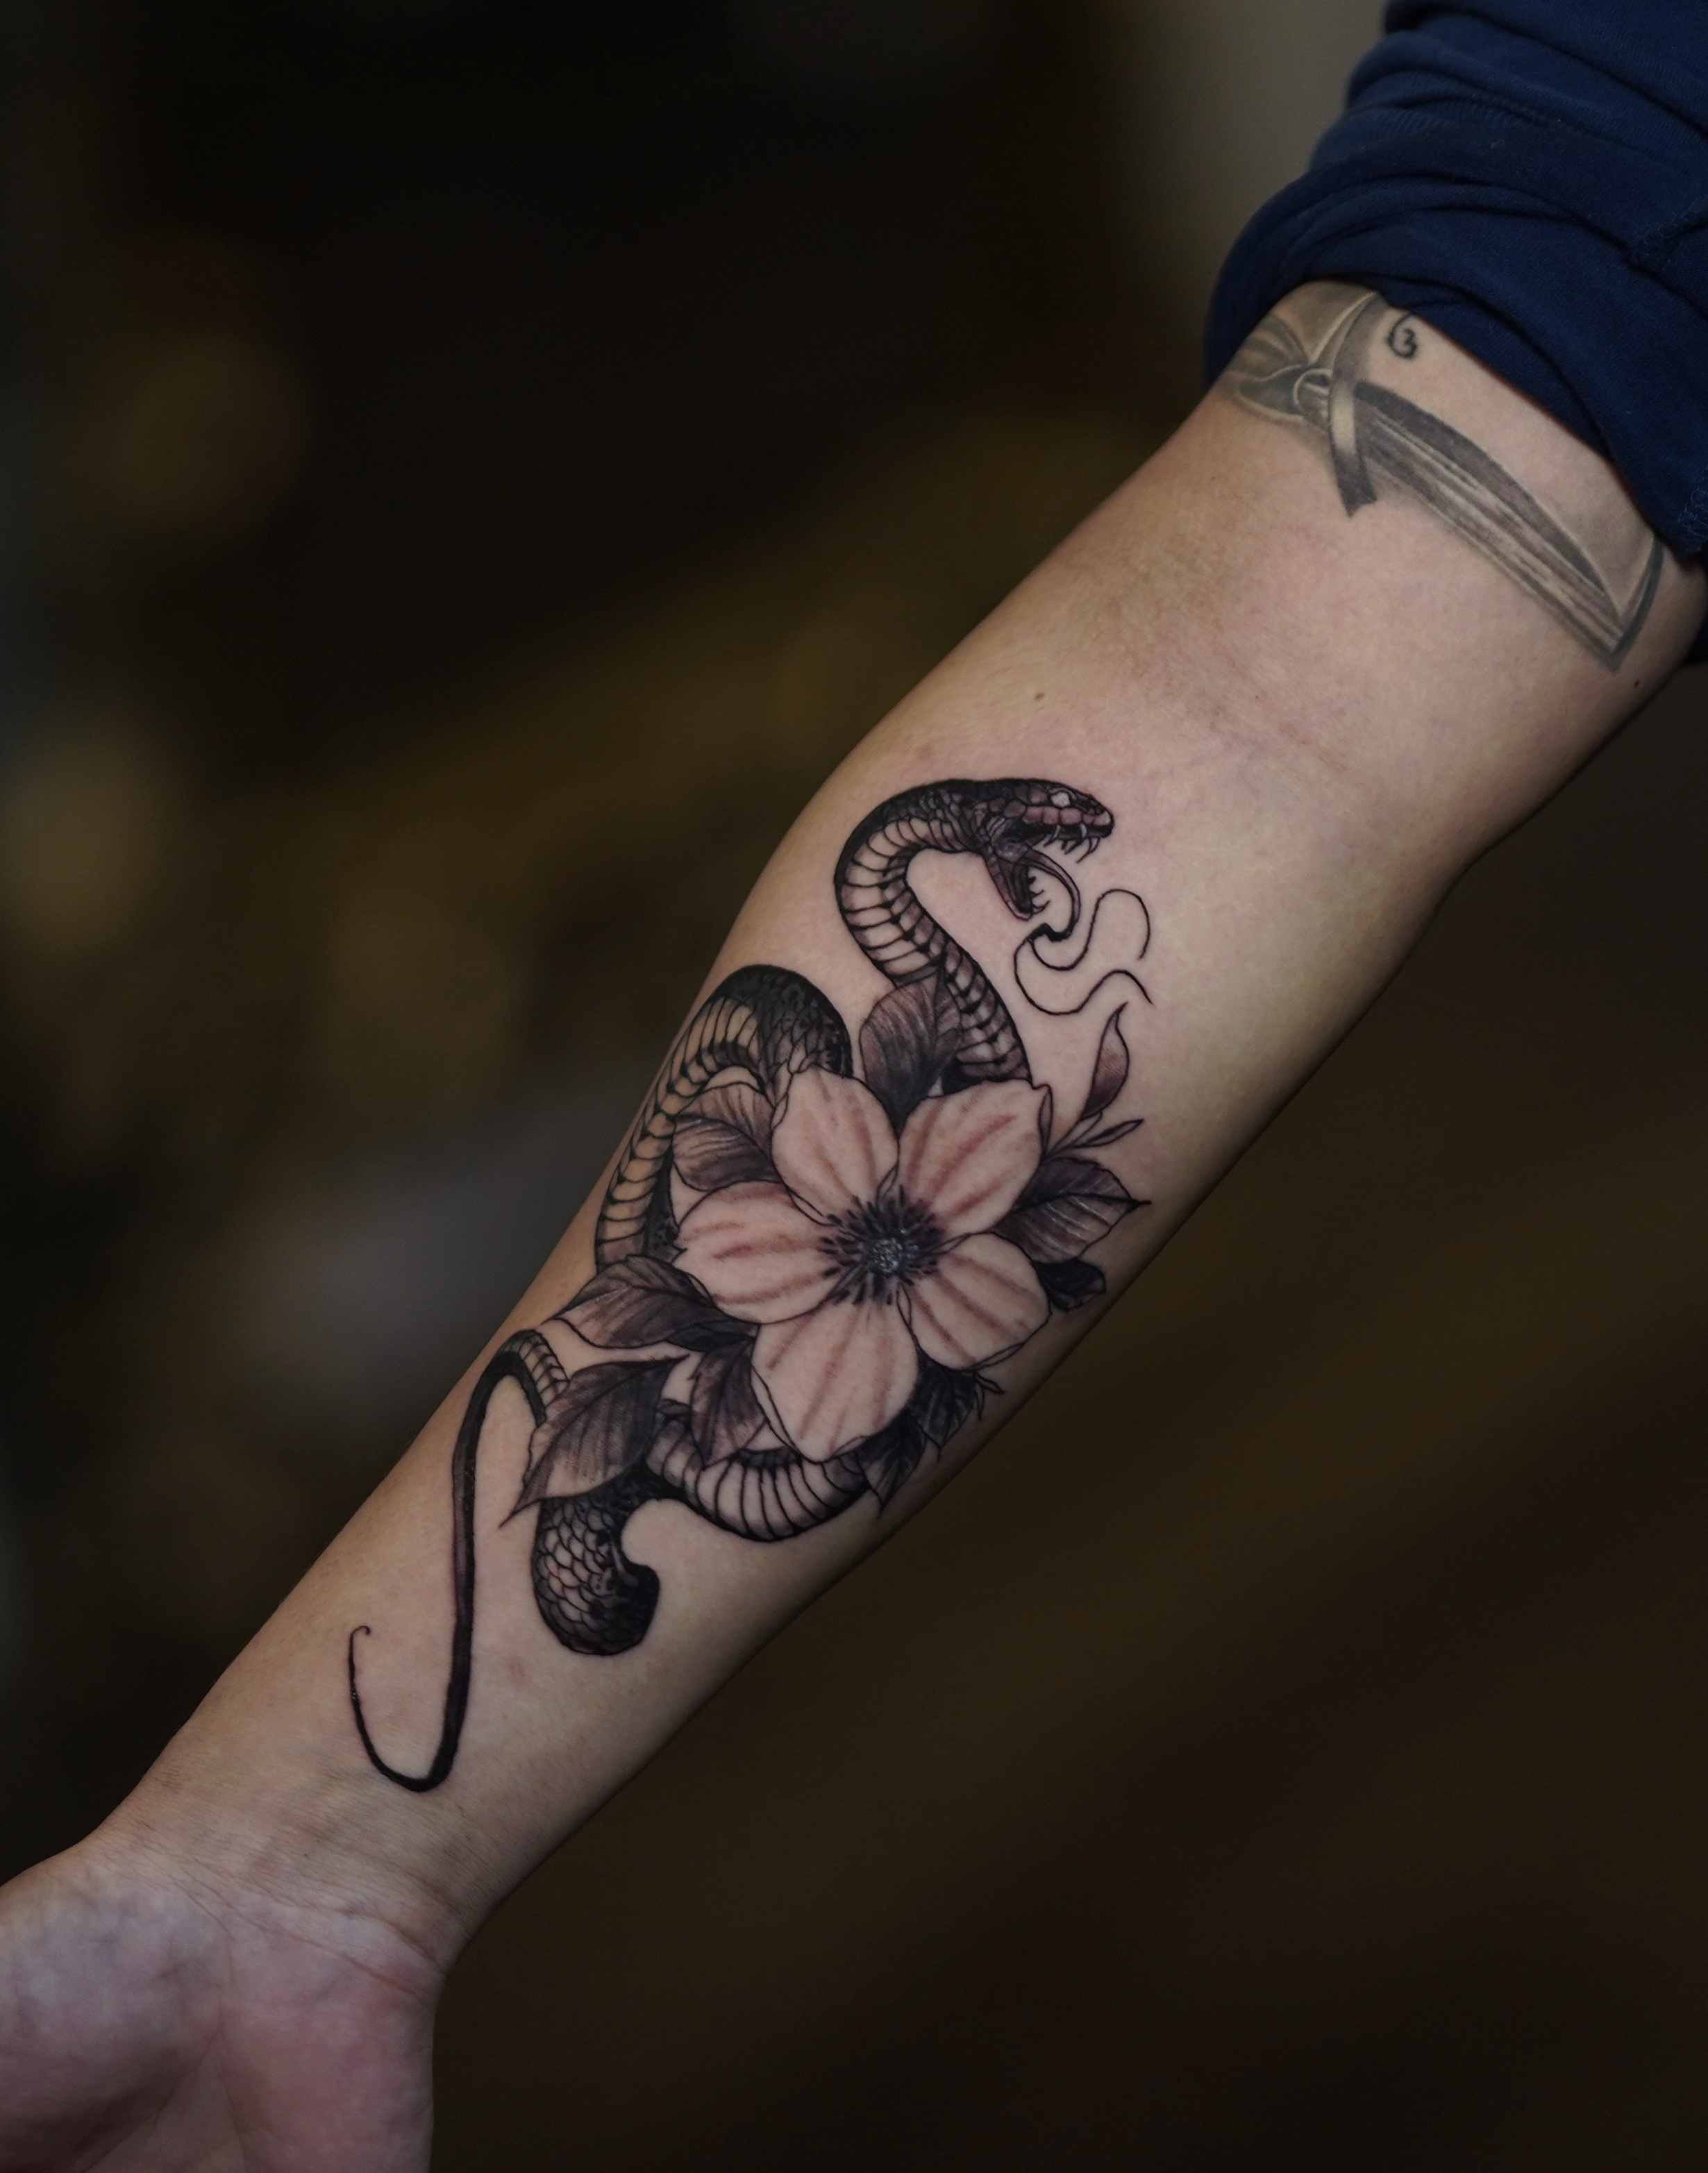 Jankowzki custom Tattoos